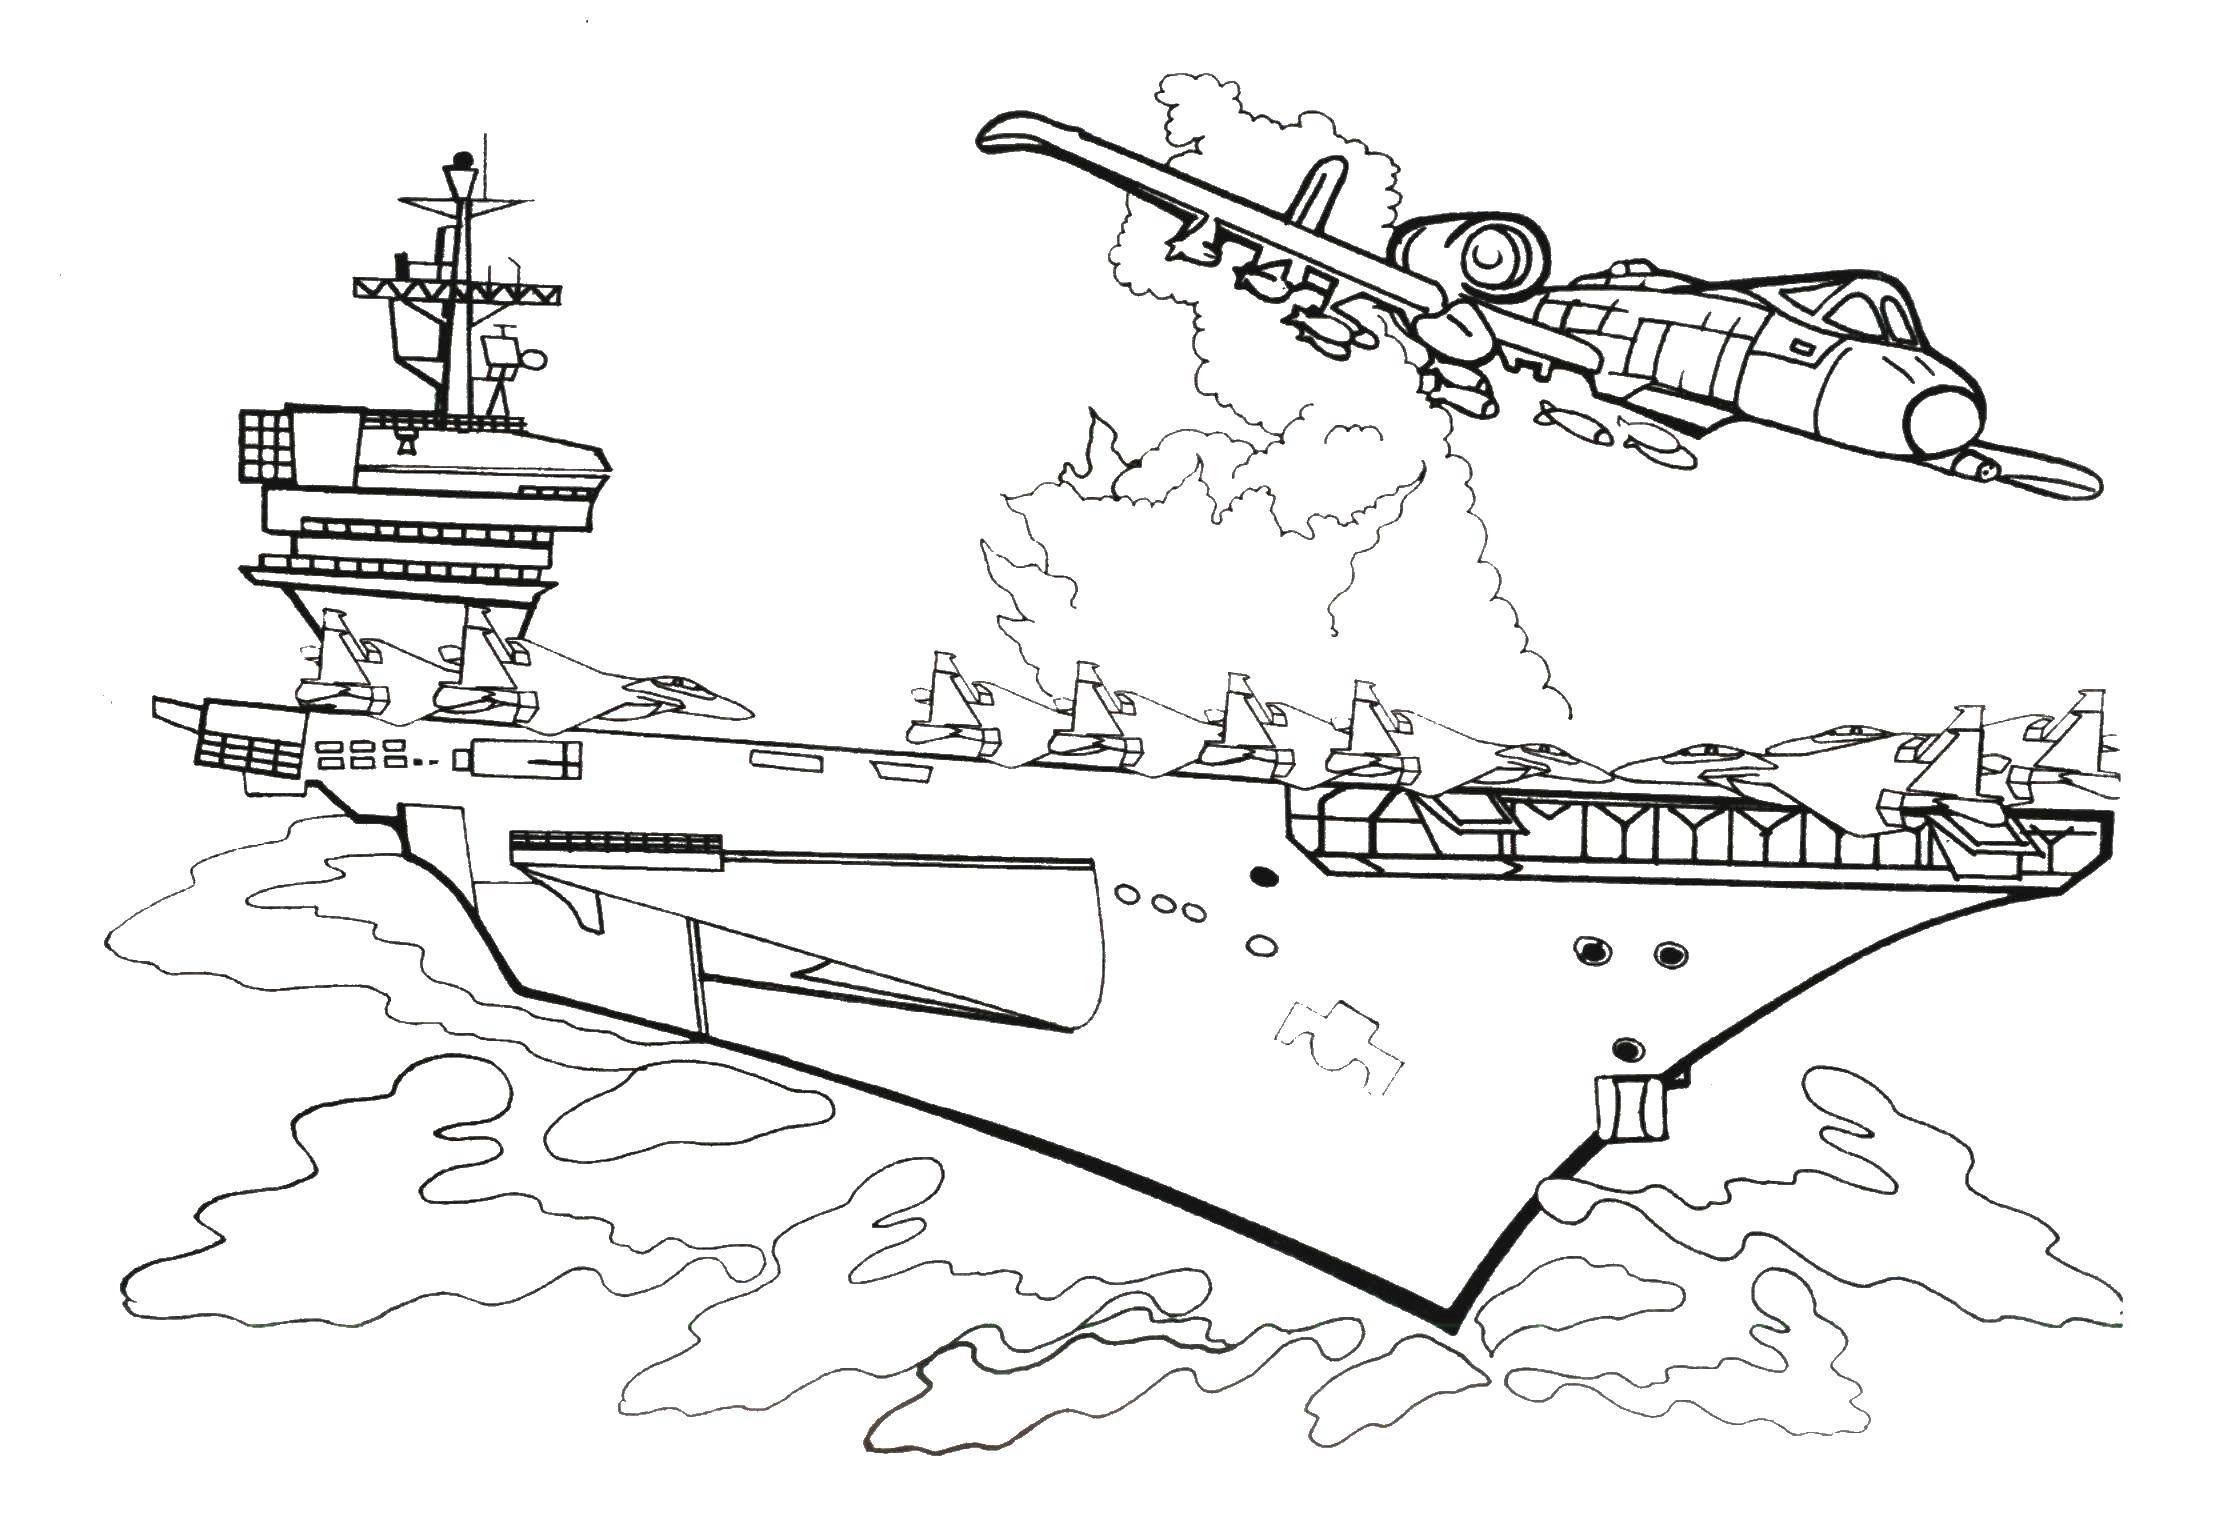 Опис: розмальовки  Крейсер. Категорія: кораблі. Теги:  крейсер.